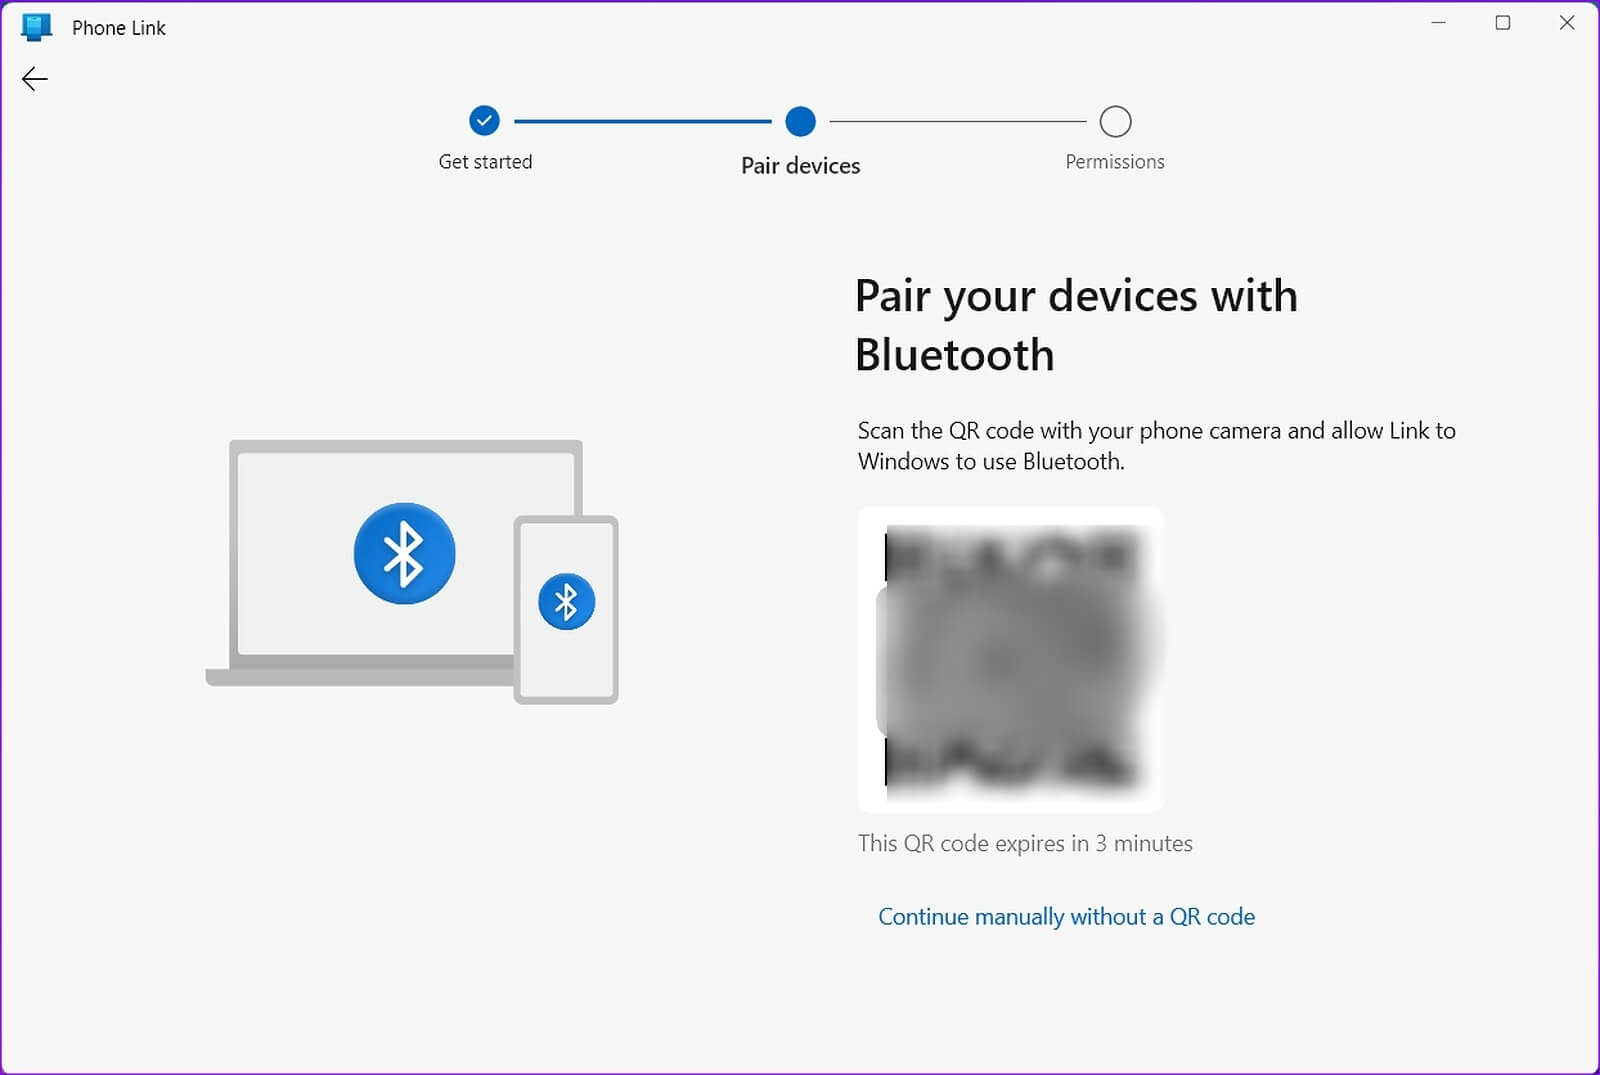 كيفية استخدام iMessage على جهاز كمبيوتر Windows باستخدام Phone Link - %categories